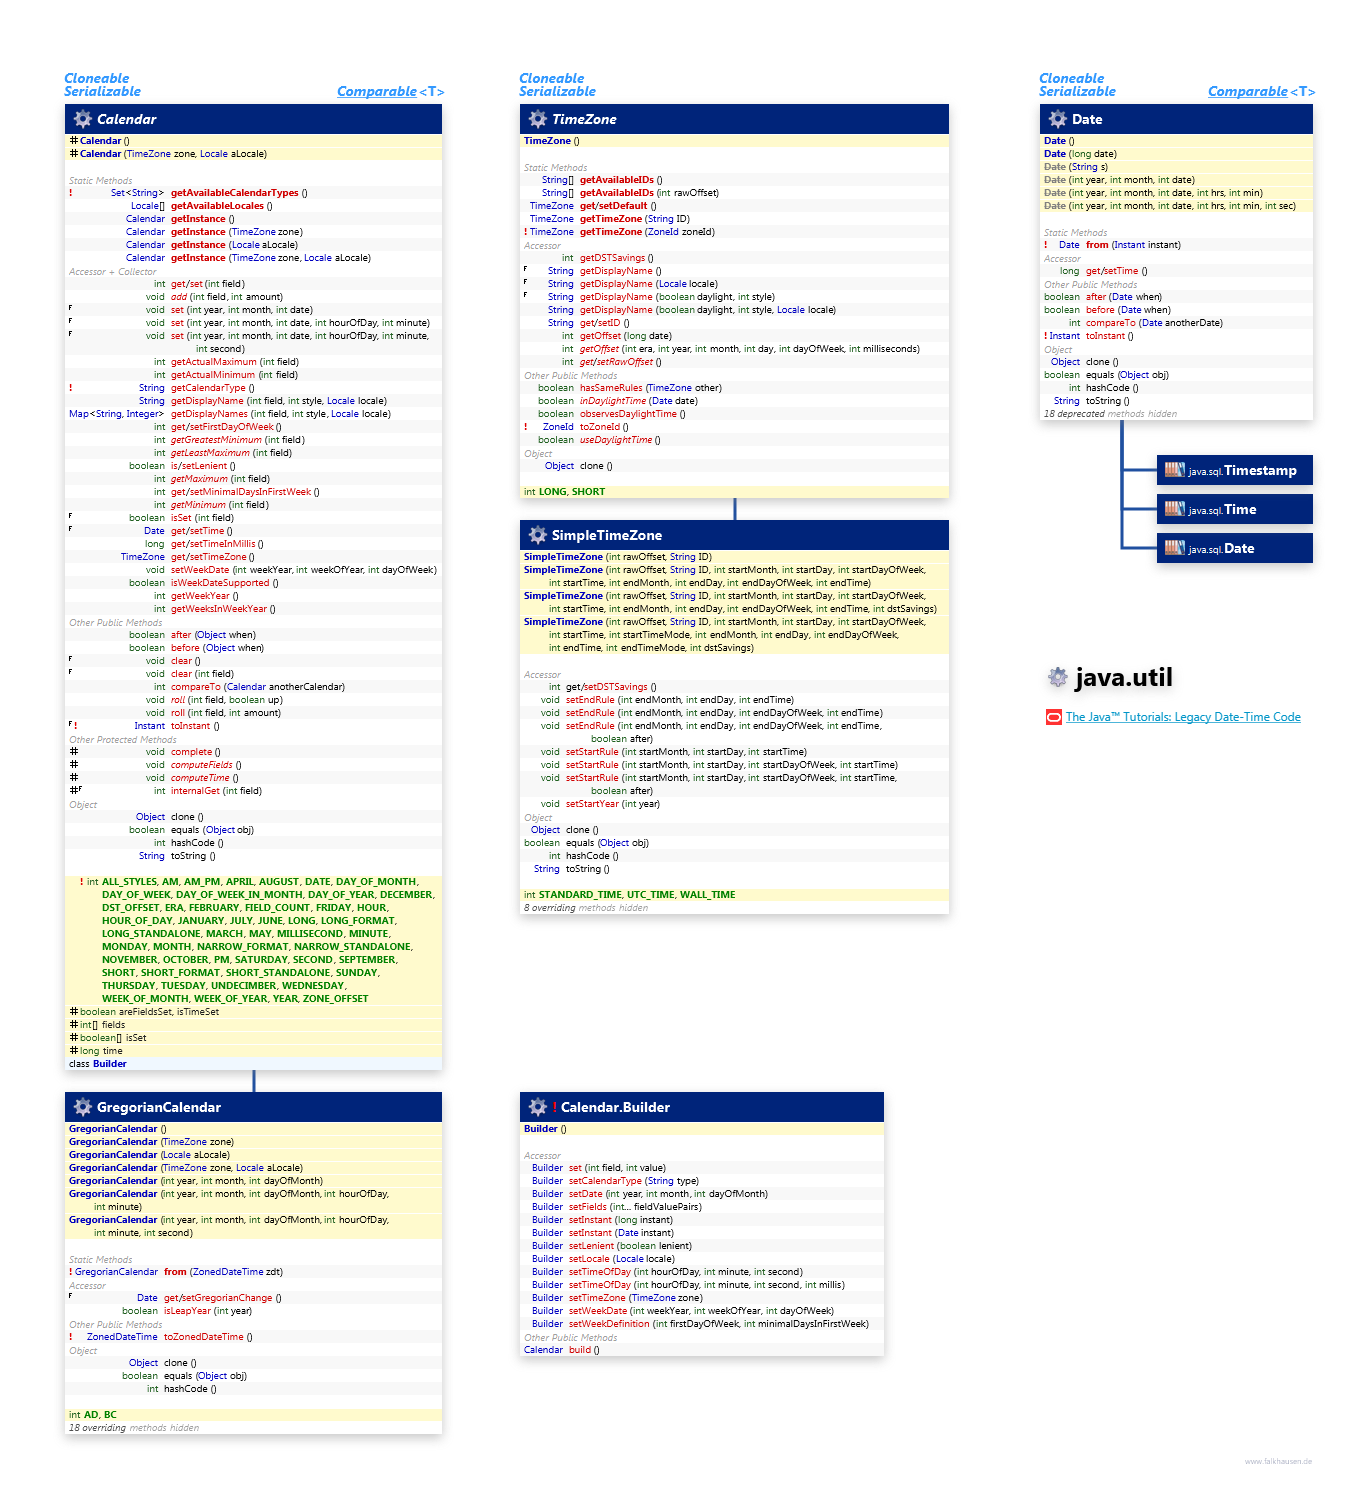 java.util Calendar class diagram and api documentation for Java 8